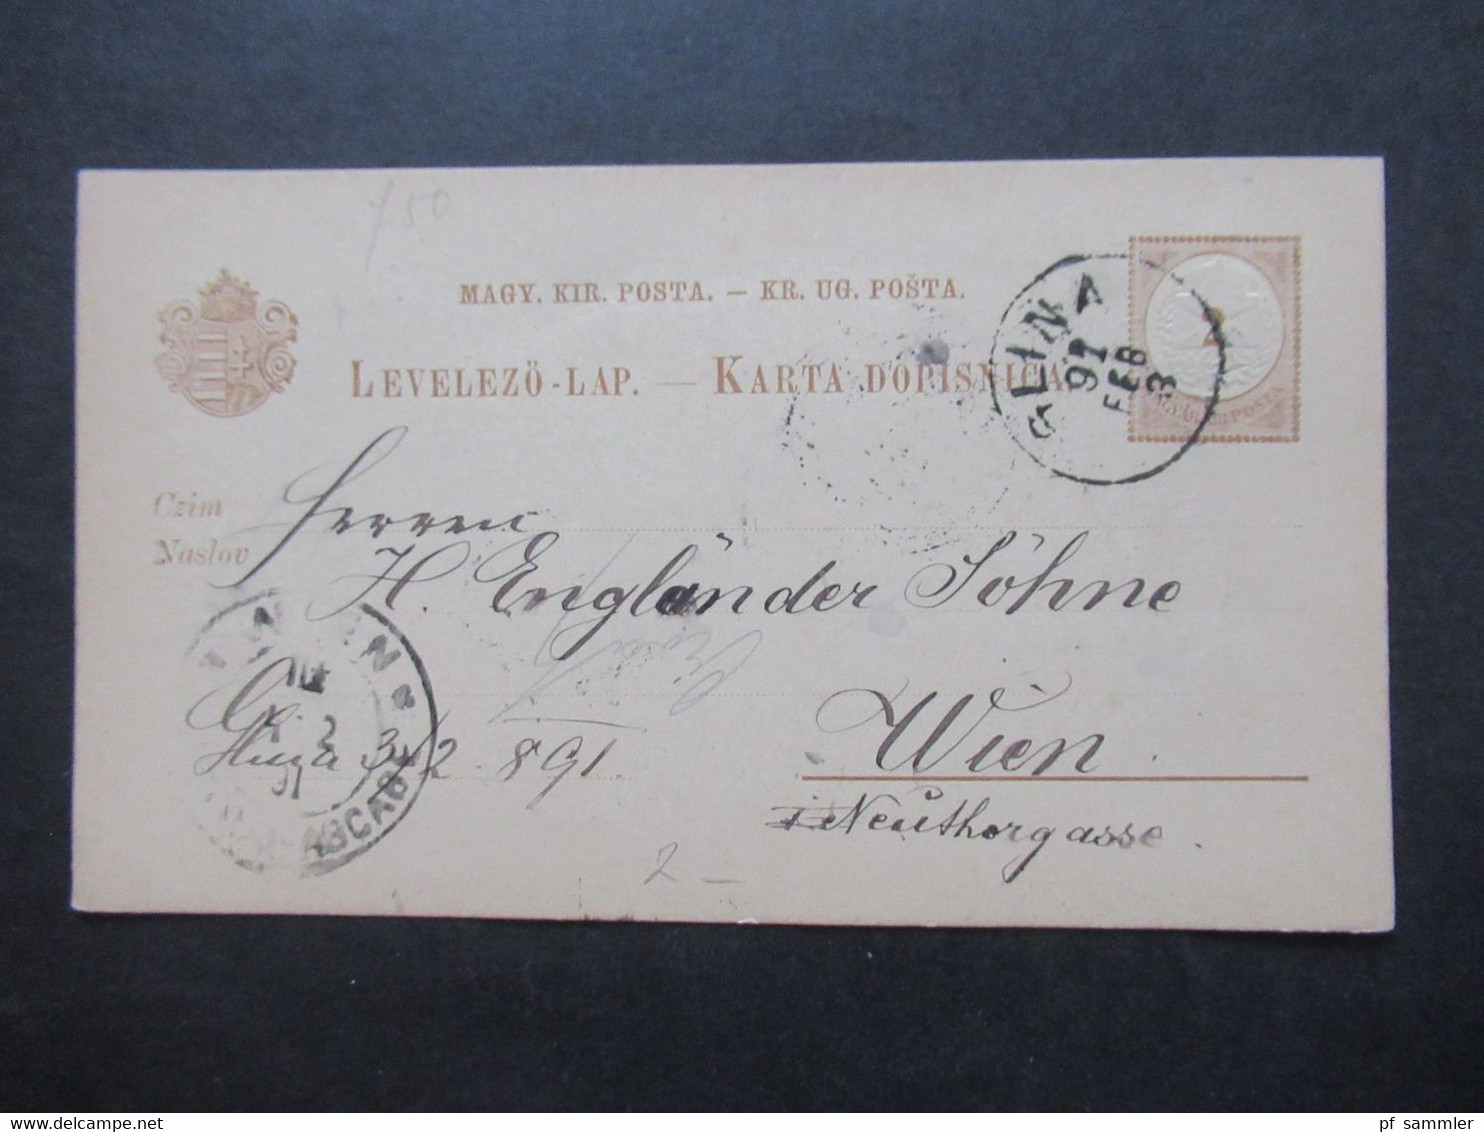 Ungarn ca. 1887 / 1891 Ganzsachen Posten ca.45 Stück alle nach Wien gesendet / interessanter Stöberposten!!